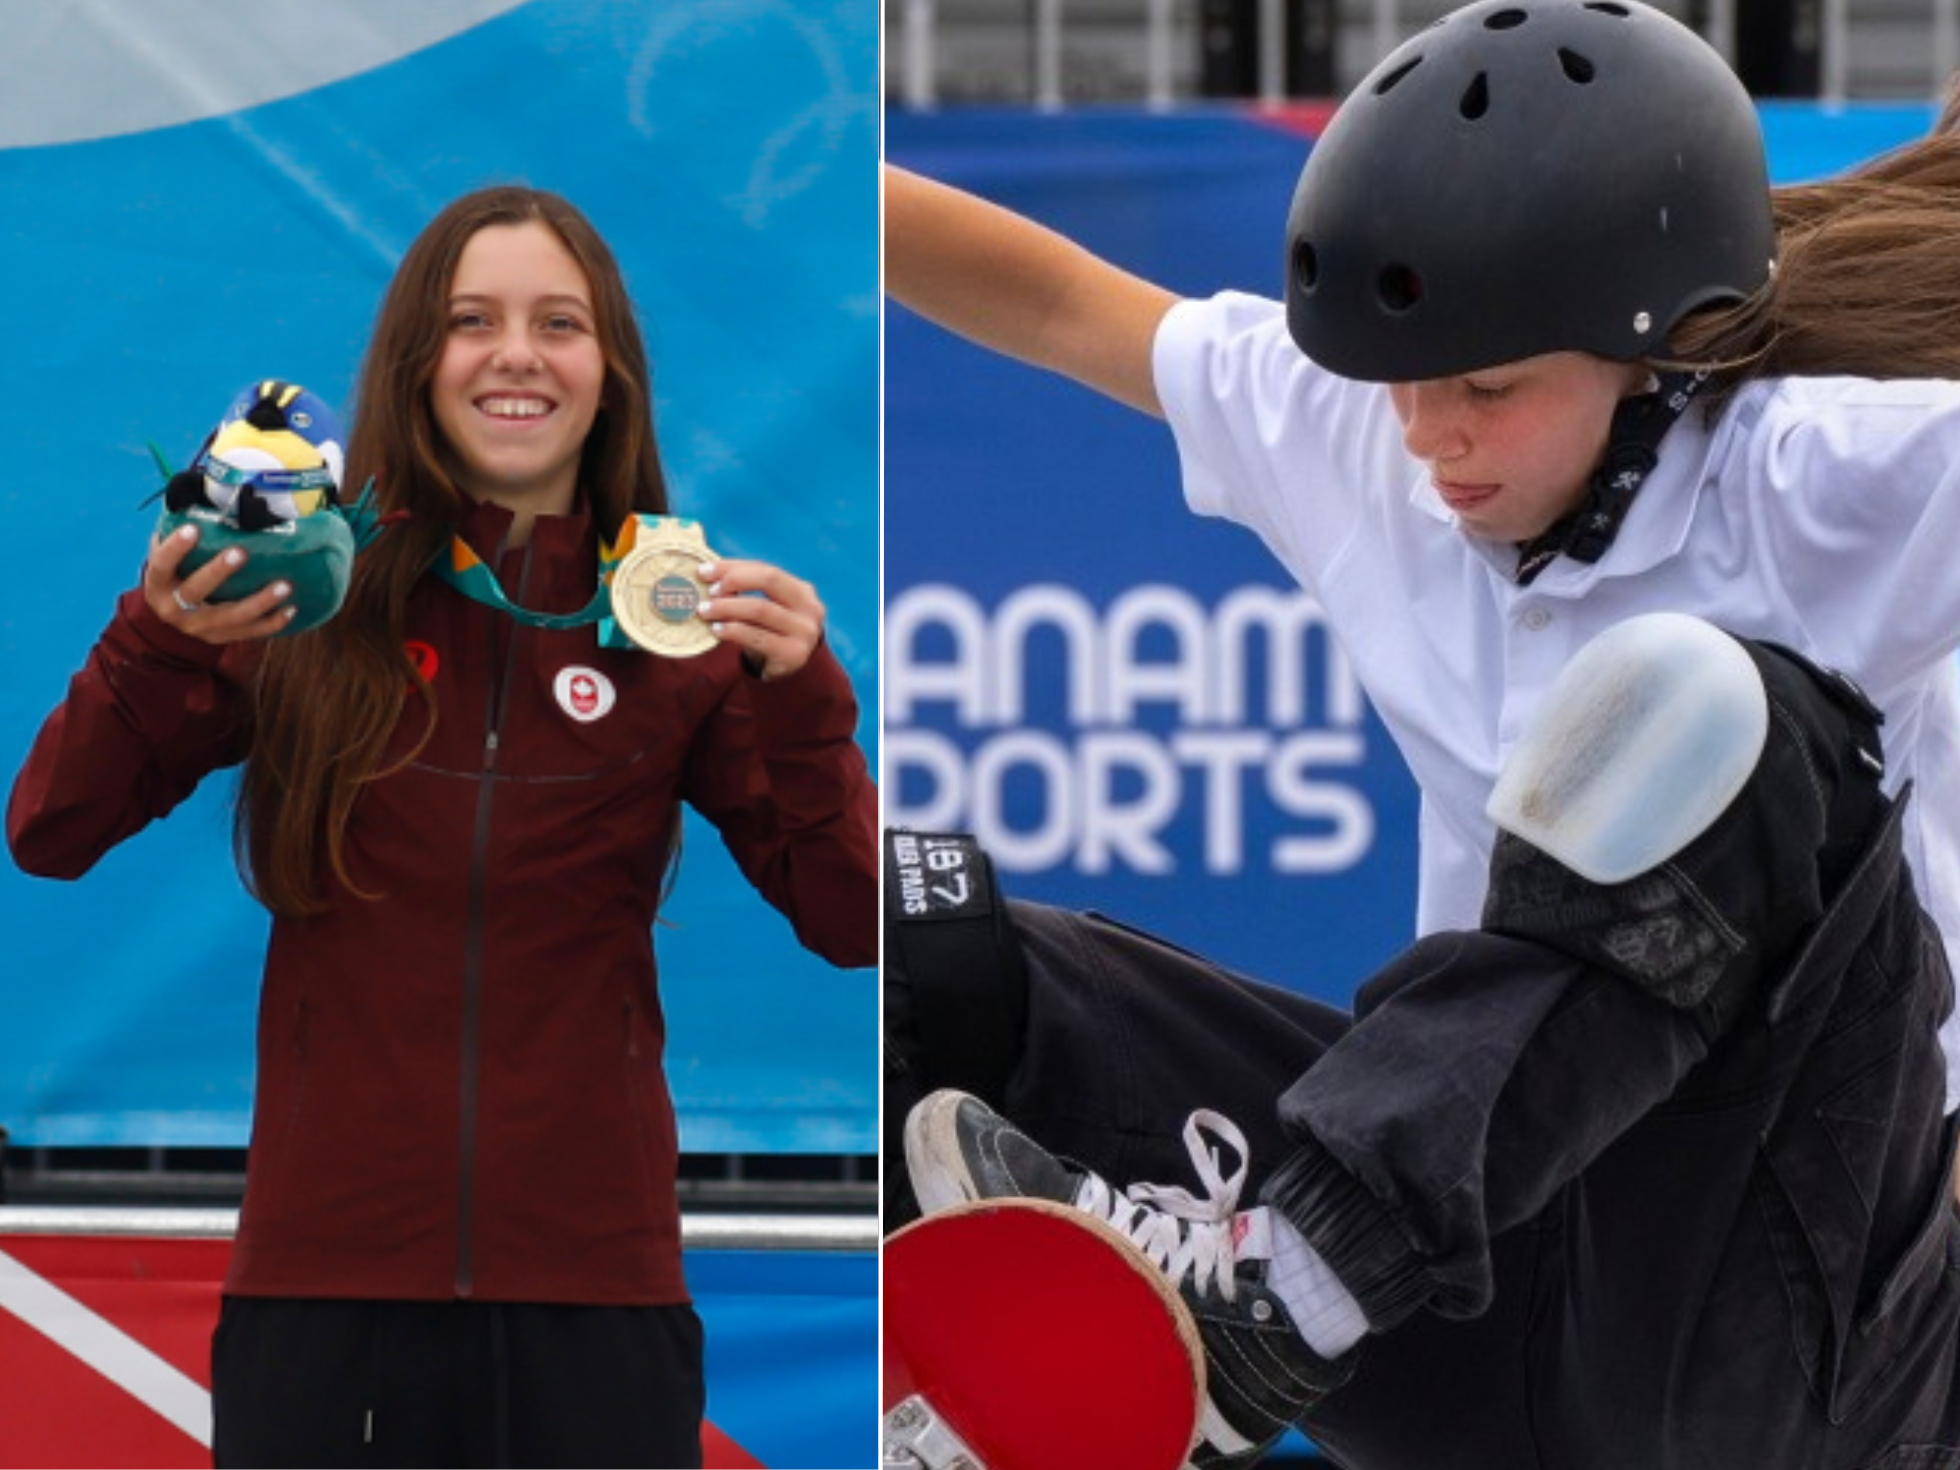 Sorprendente hazaña en los Juegos Panamericanos: Adolescente de 13 años ganó el oro en la competencia de skateboarding femenino